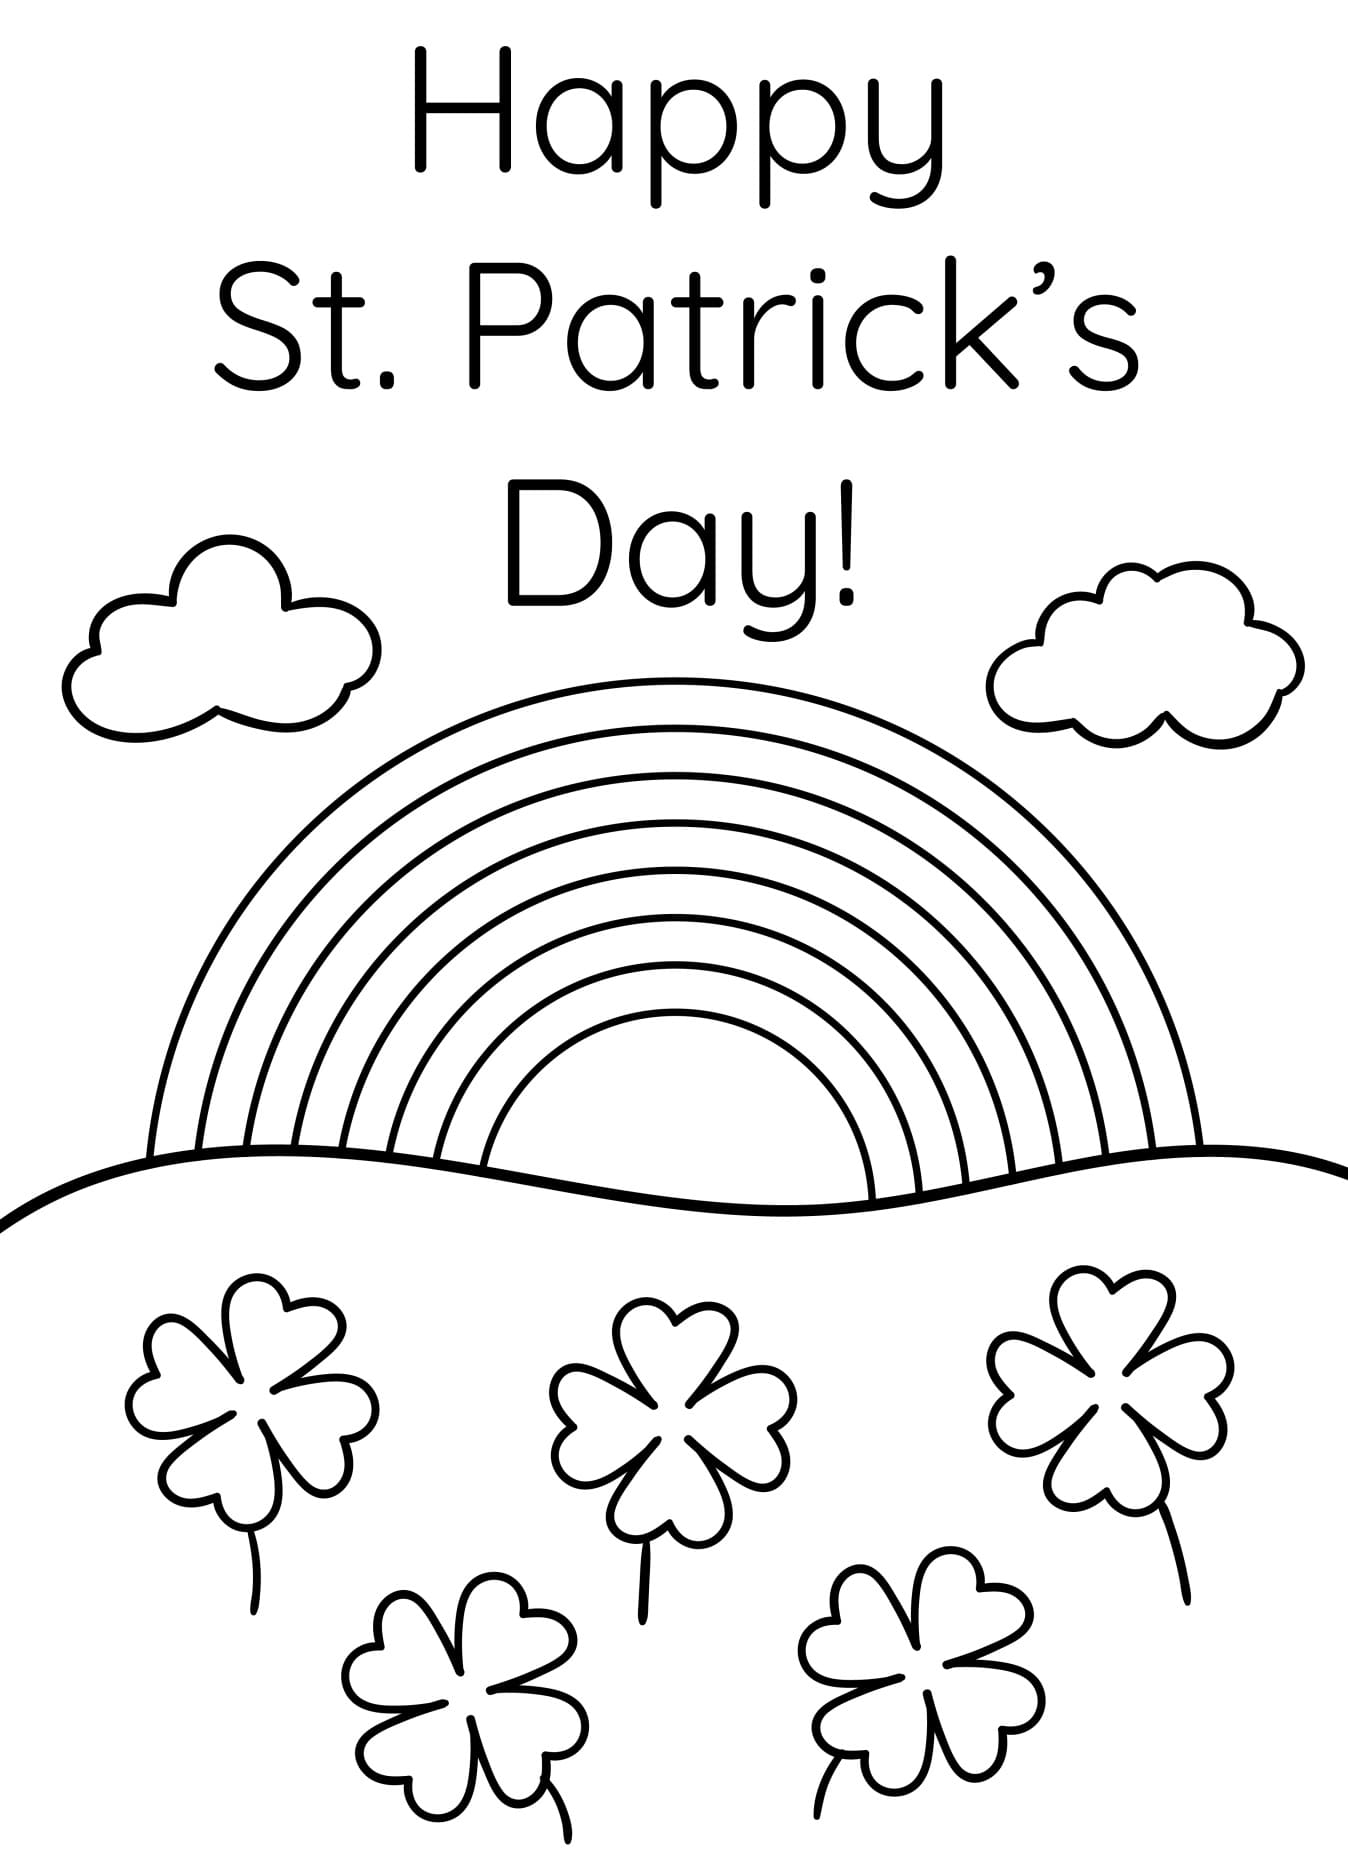 Dessin de La Saint-Patrick Gratuit coloring page